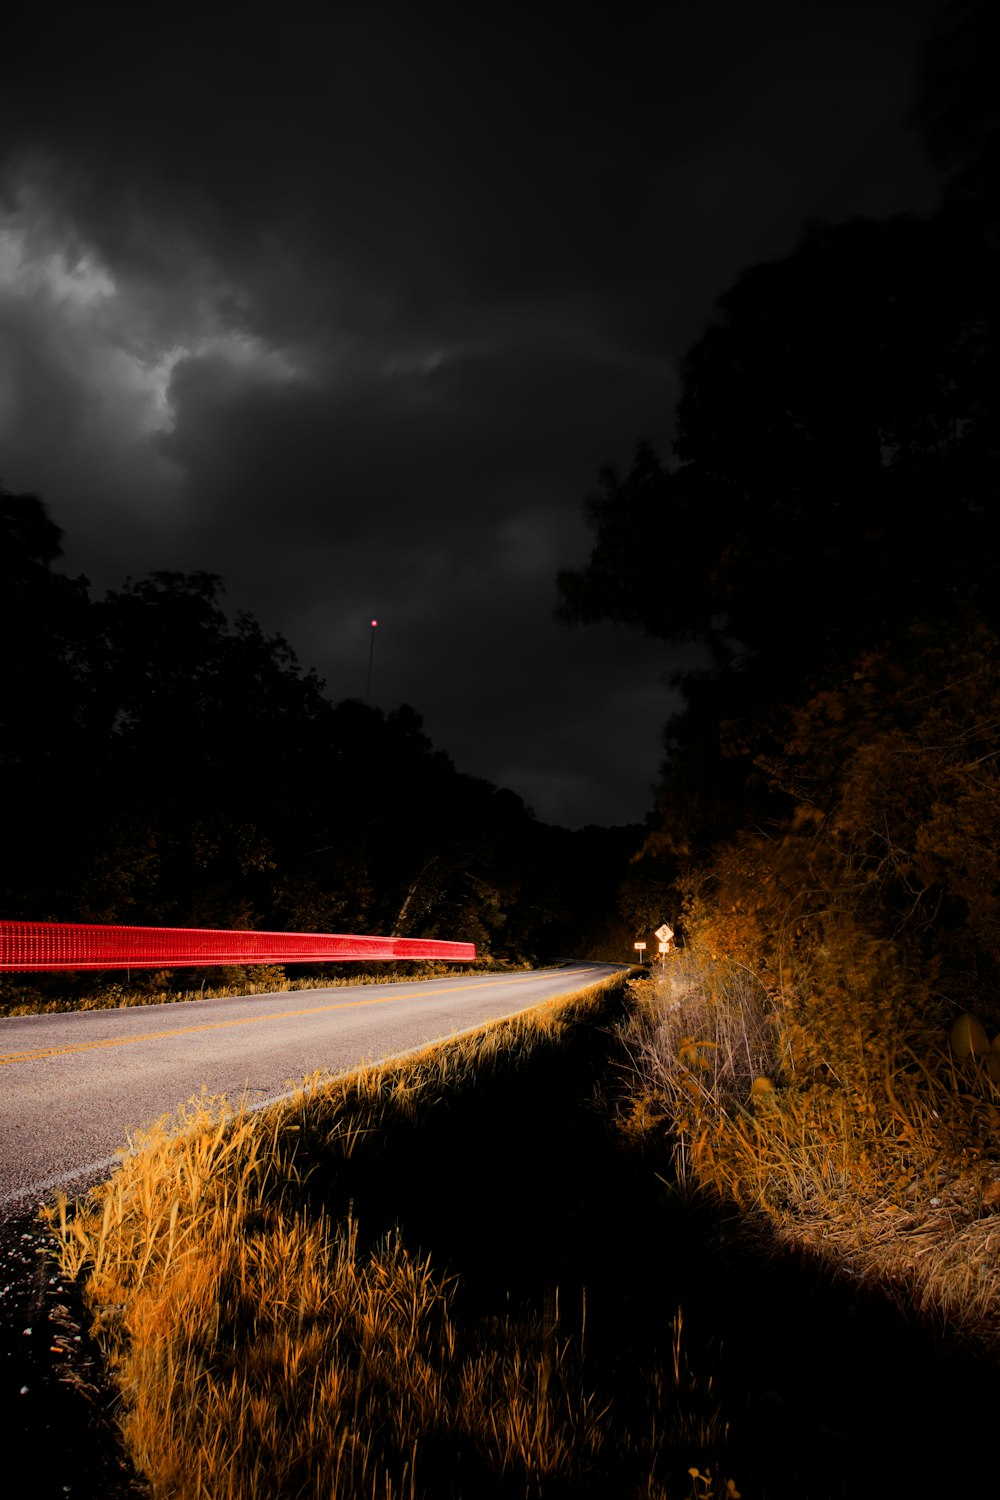 Fotografía de lapso de tiempo de la carretera durante la noche